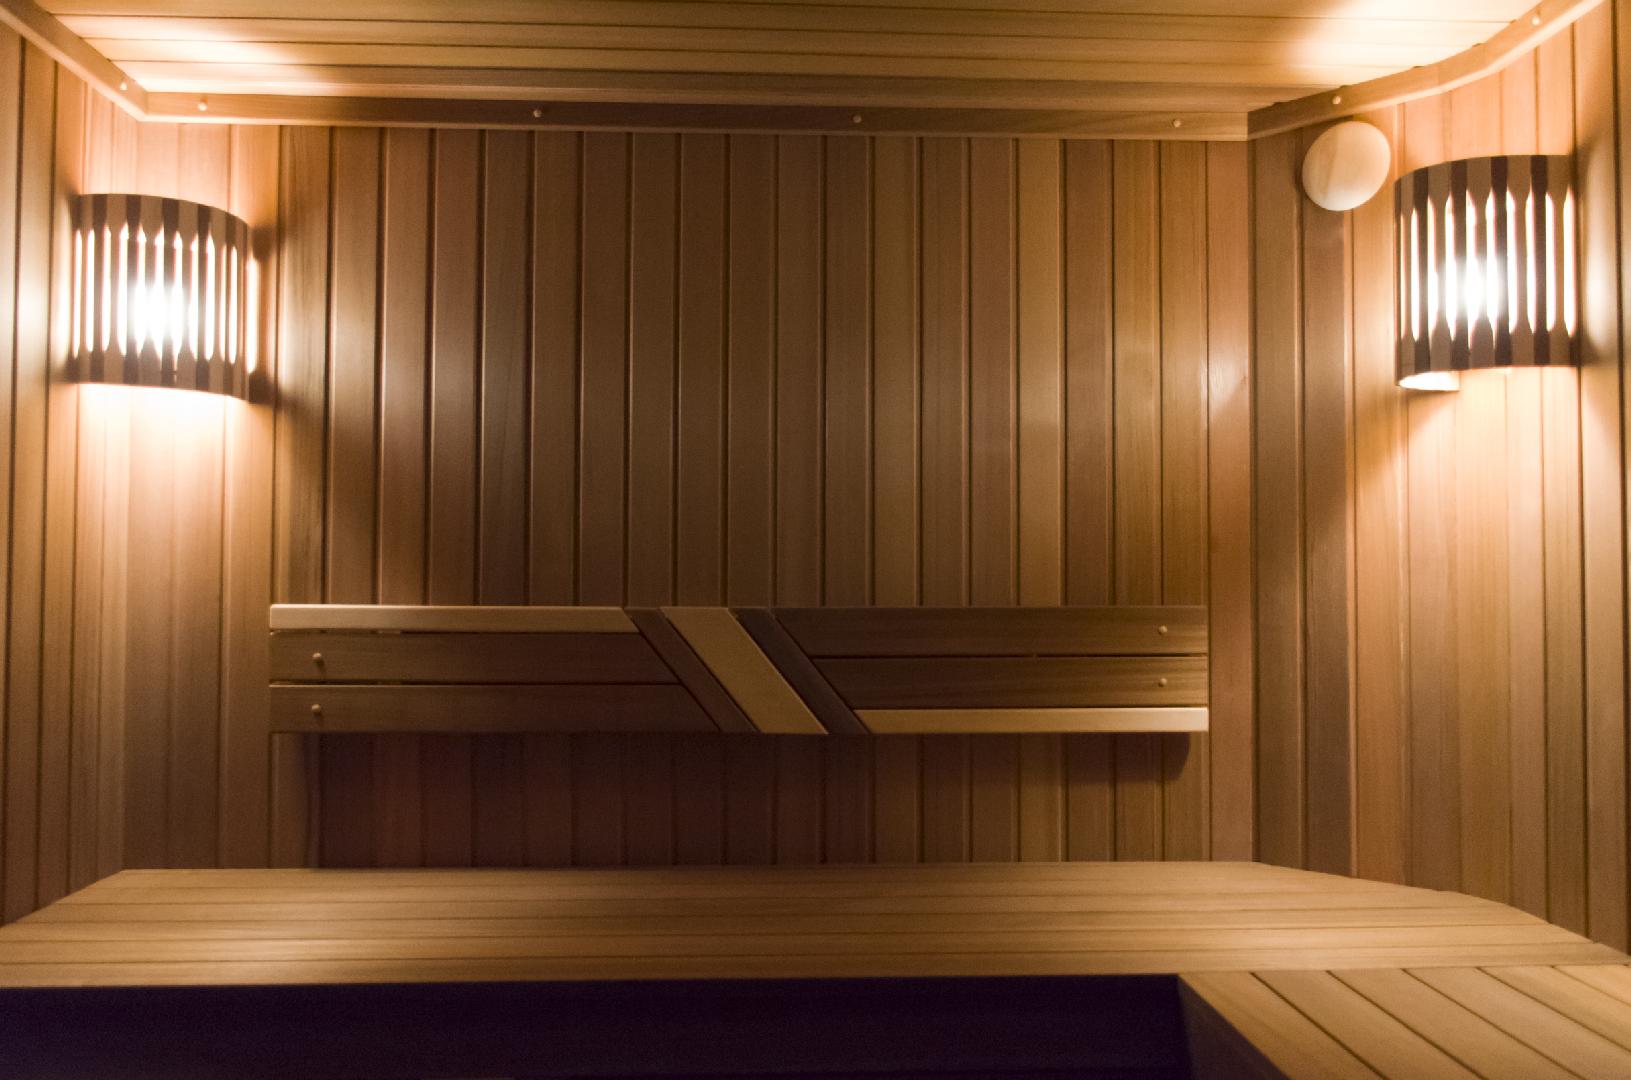 Чем обшить парилку в бане: древесина для отделки, каким деревом отделать парилку внутри лучше, выбор доски